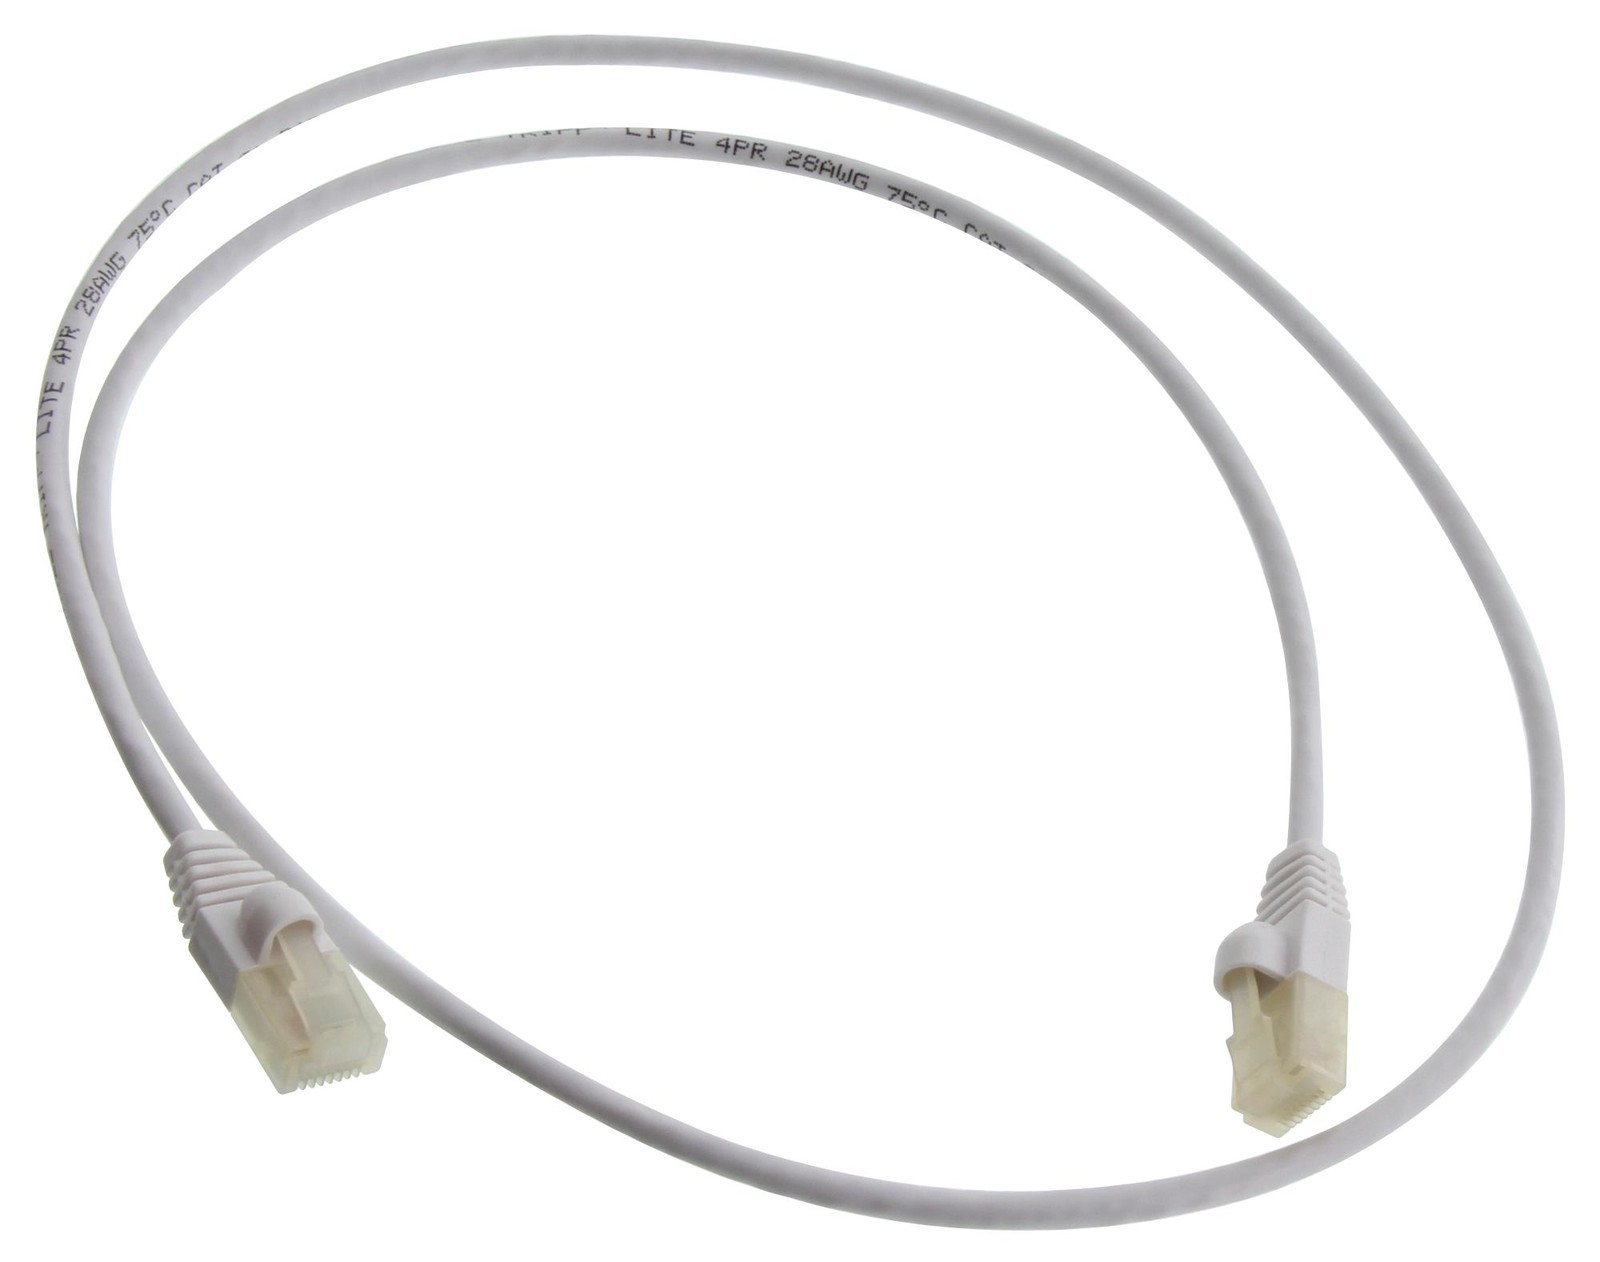 Eaton Tripp Lite N261Ab-S03-Wh Enet Cable, Rj45 Plug-Plug, 3Ft, White